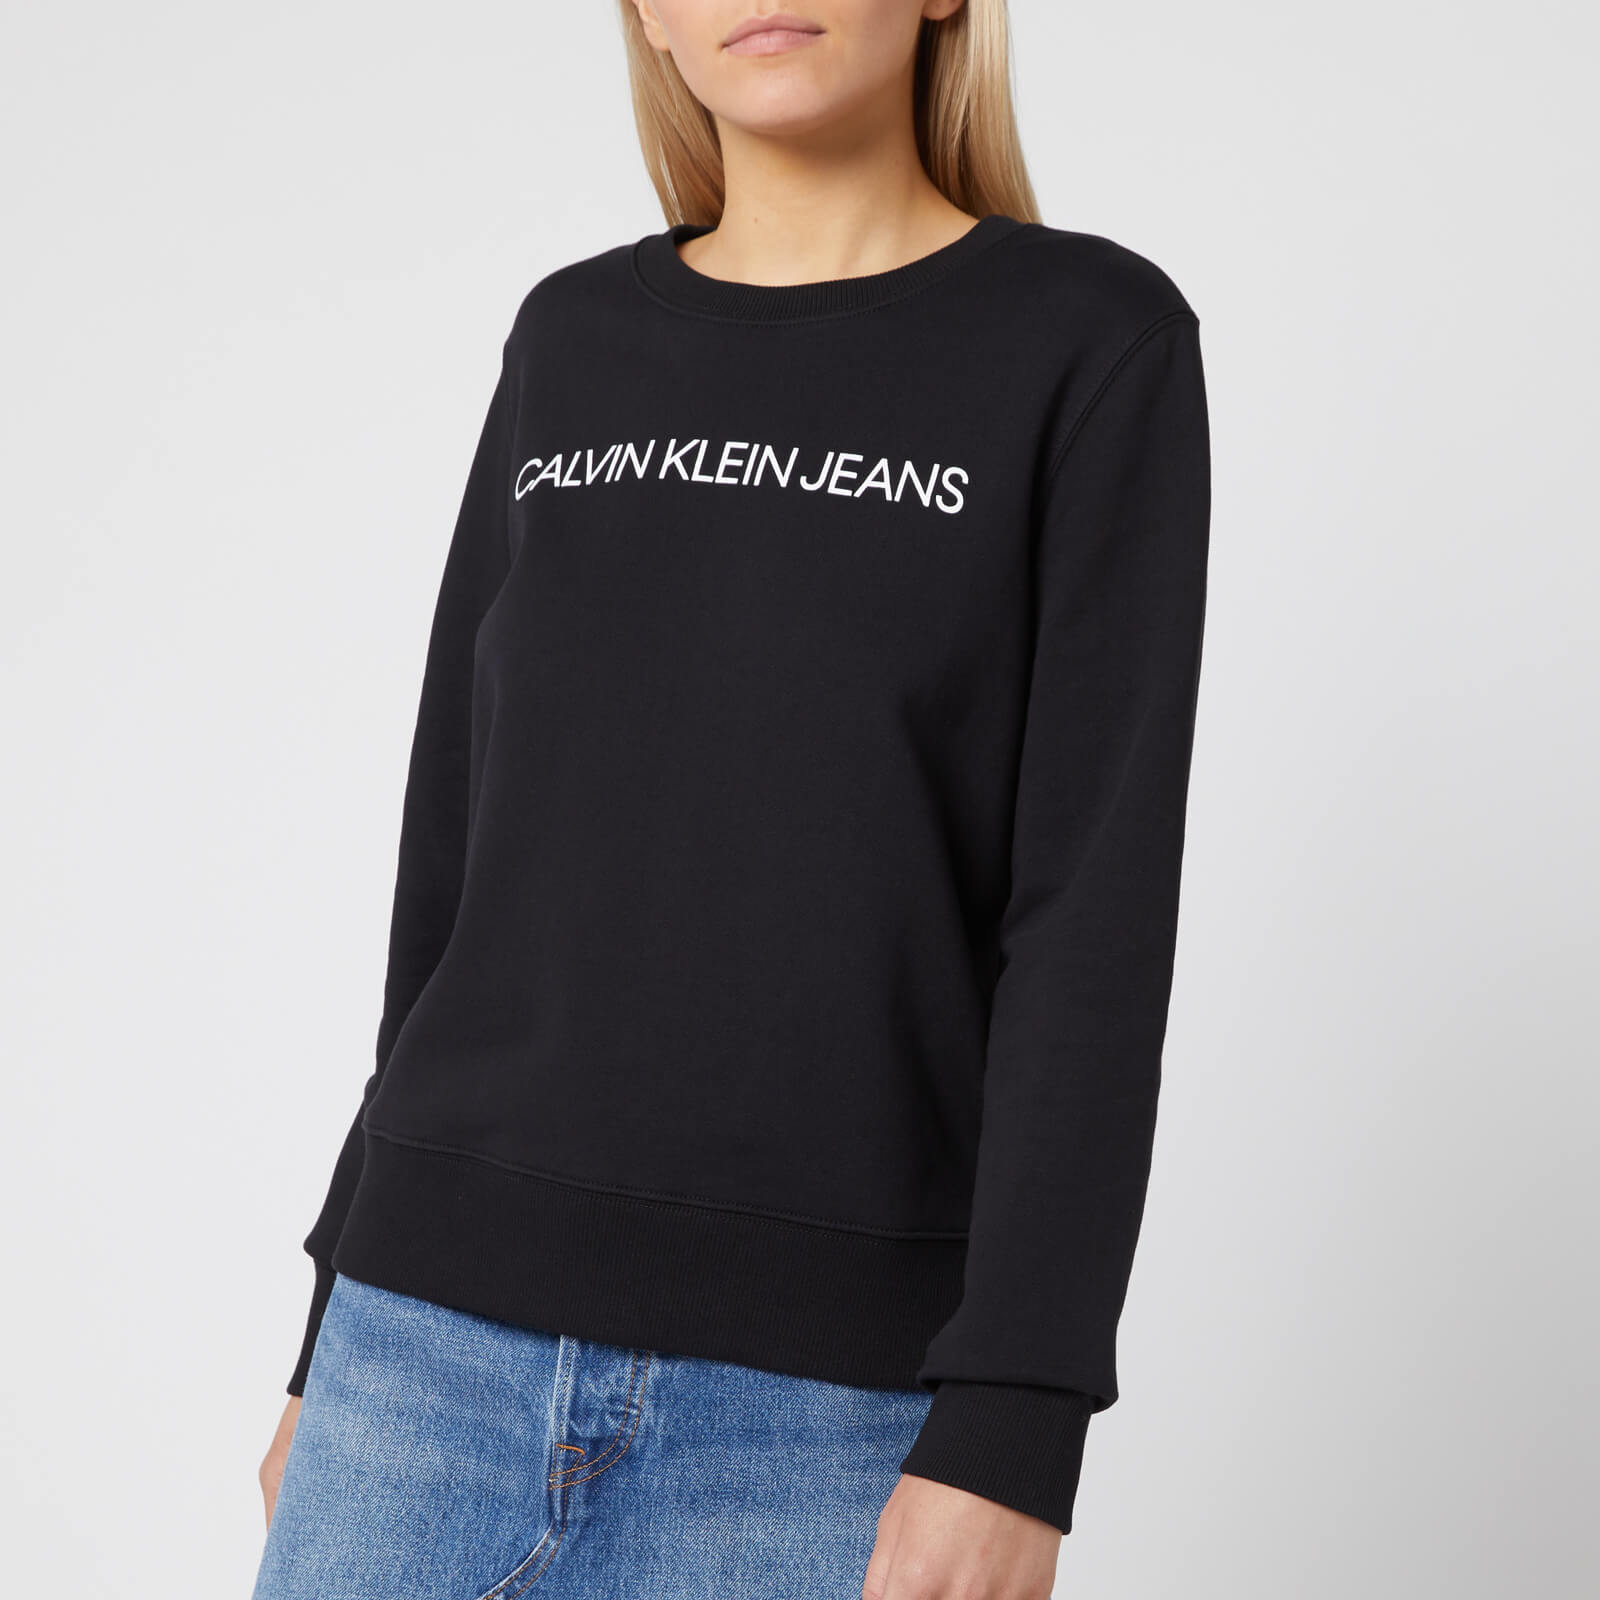 calvin klein jeans logo sweatshirt